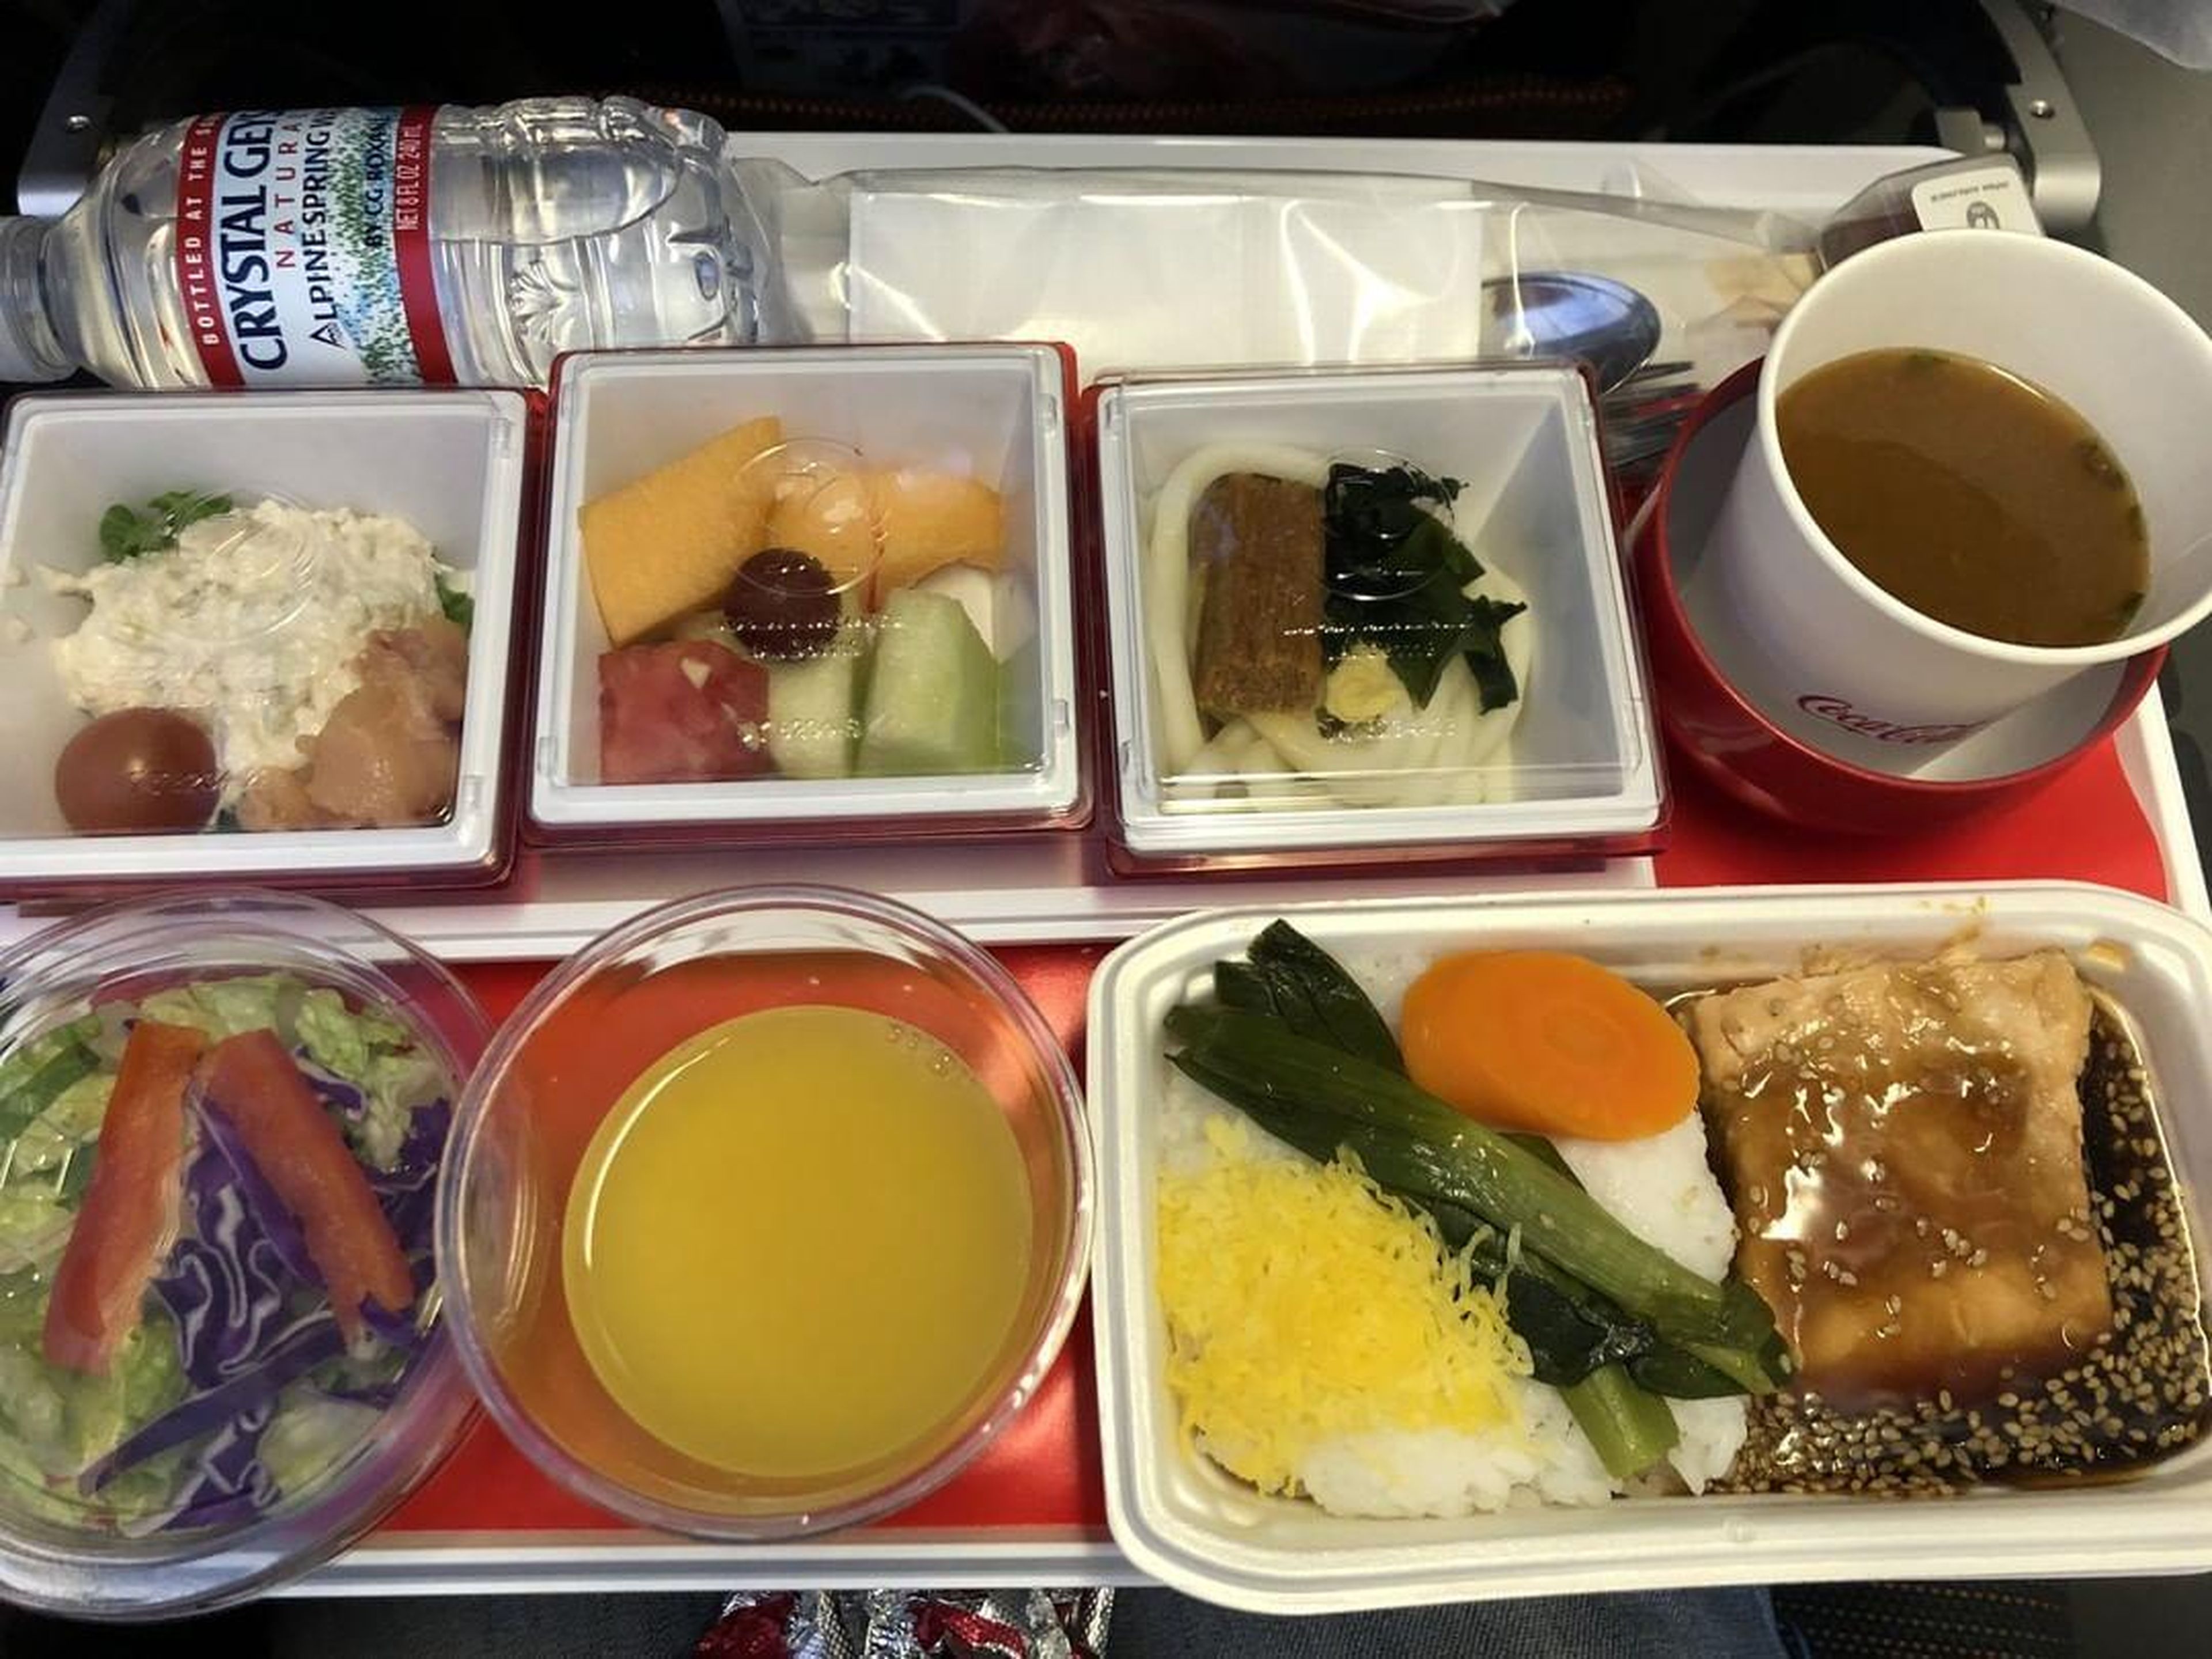 El menú de clase turista de una aerolínea japonesa